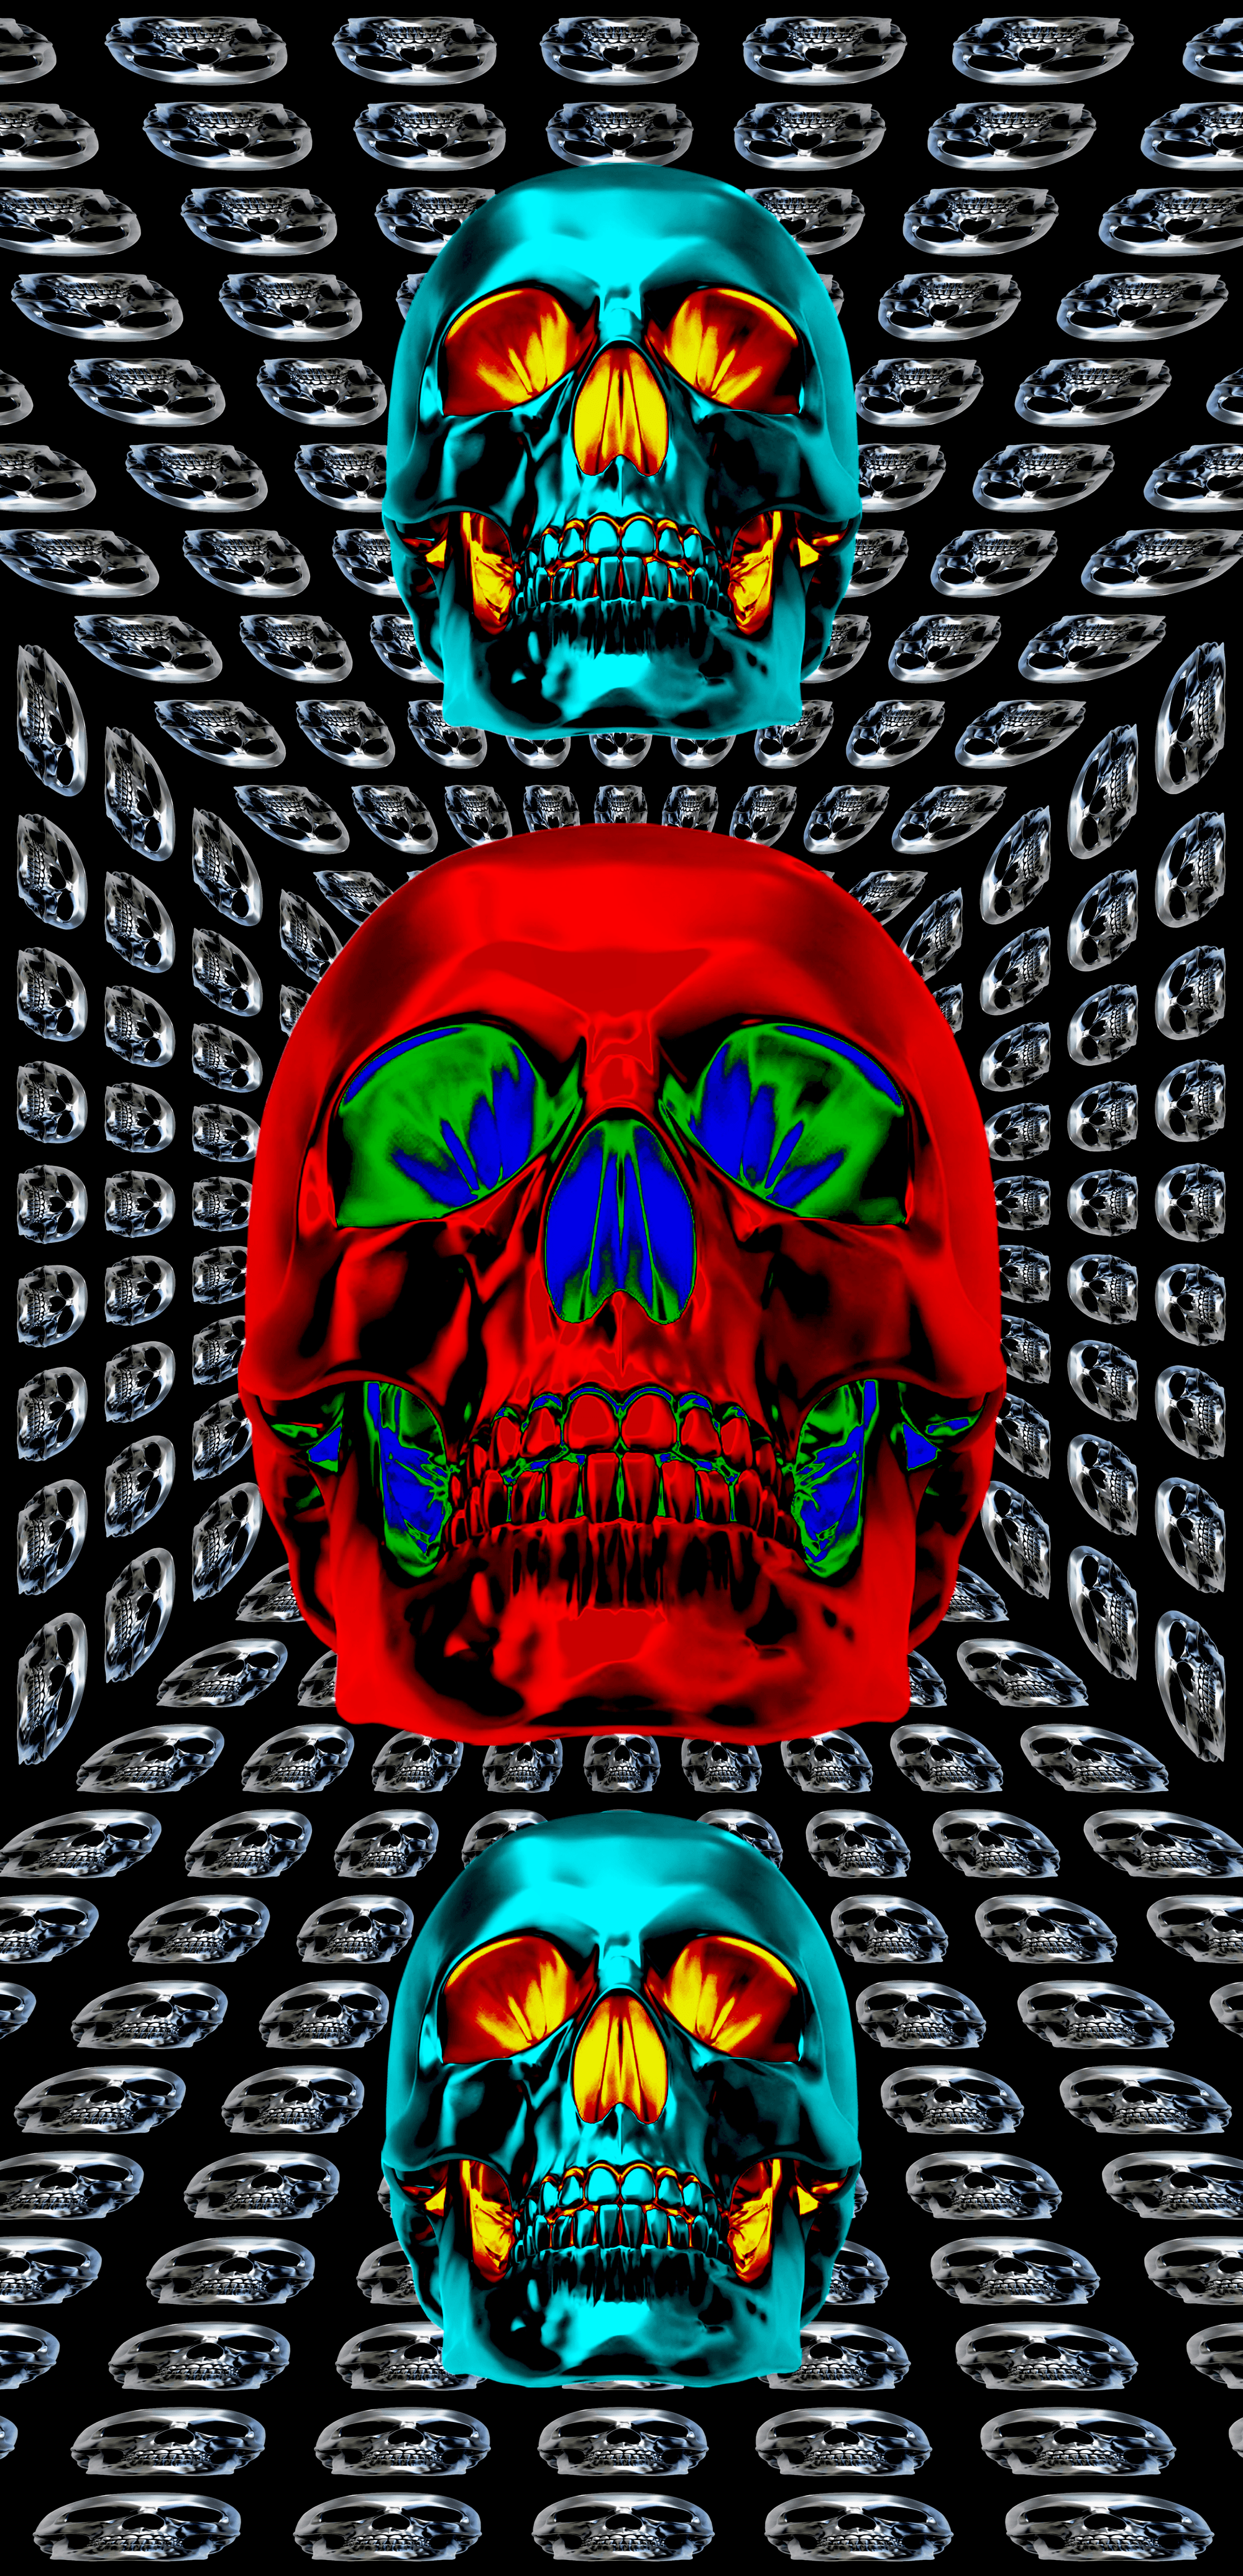 Color Skulls #03 (63x133cms) iphone Wallpaper + NFT + Poster - 